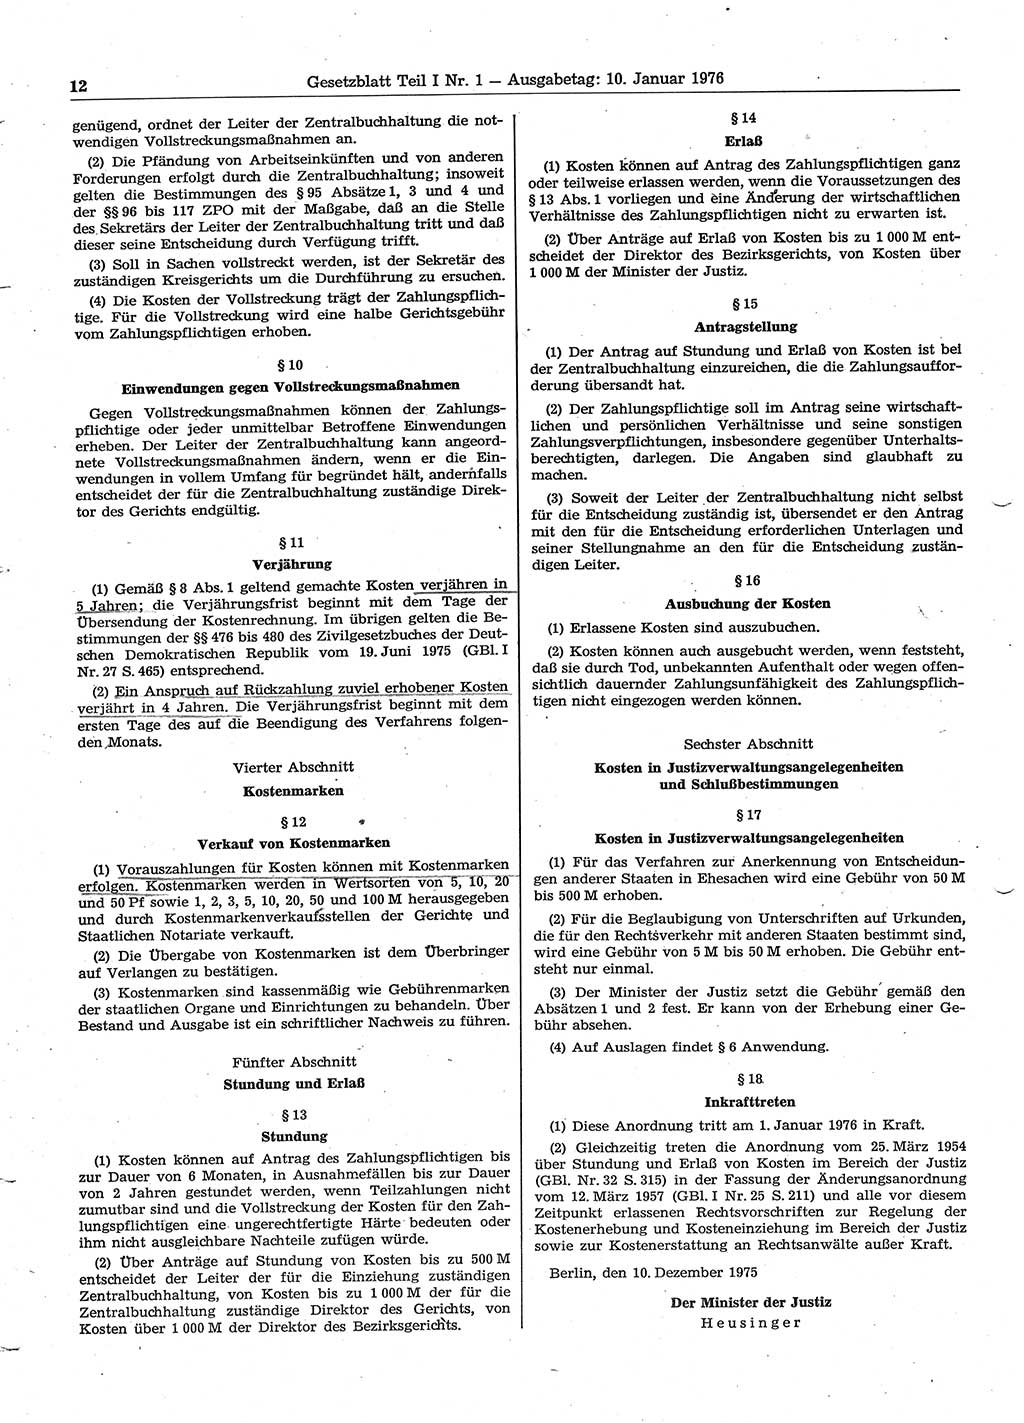 Gesetzblatt (GBl.) der Deutschen Demokratischen Republik (DDR) Teil Ⅰ 1976, Seite 12 (GBl. DDR Ⅰ 1976, S. 12)